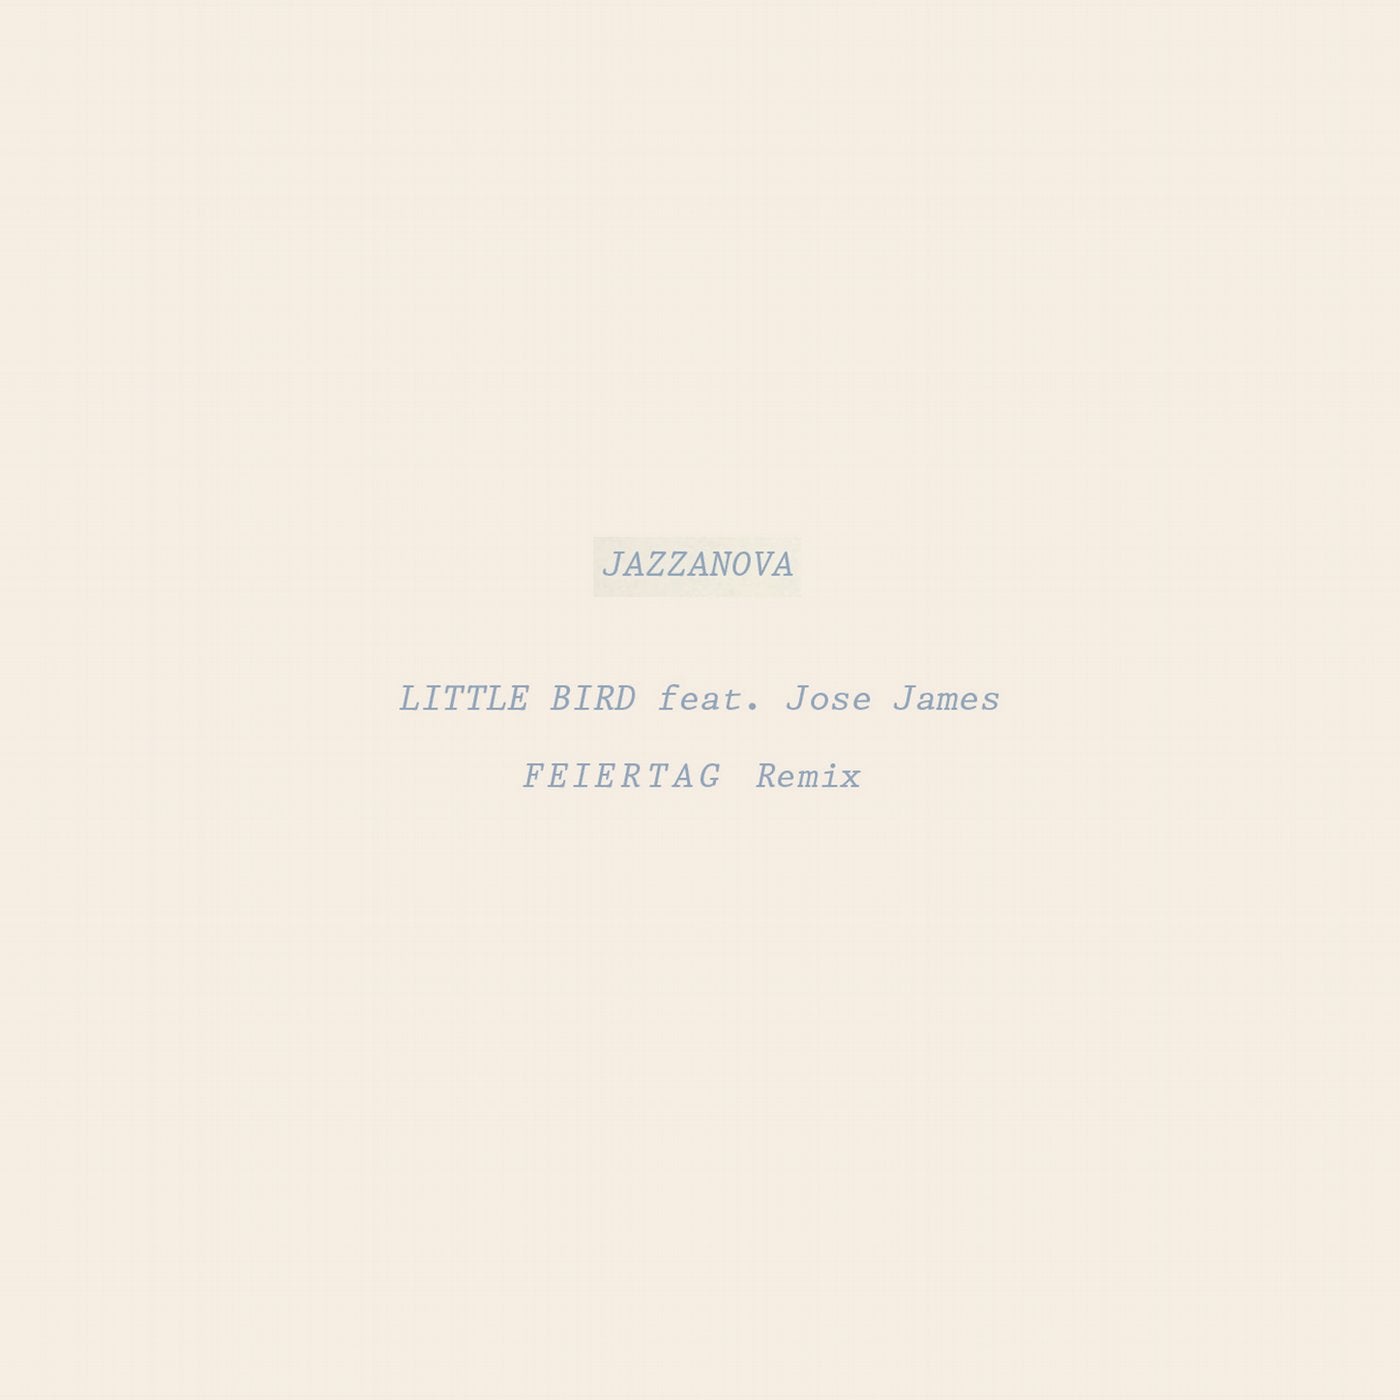 Little Bird (Feiertag Remix)